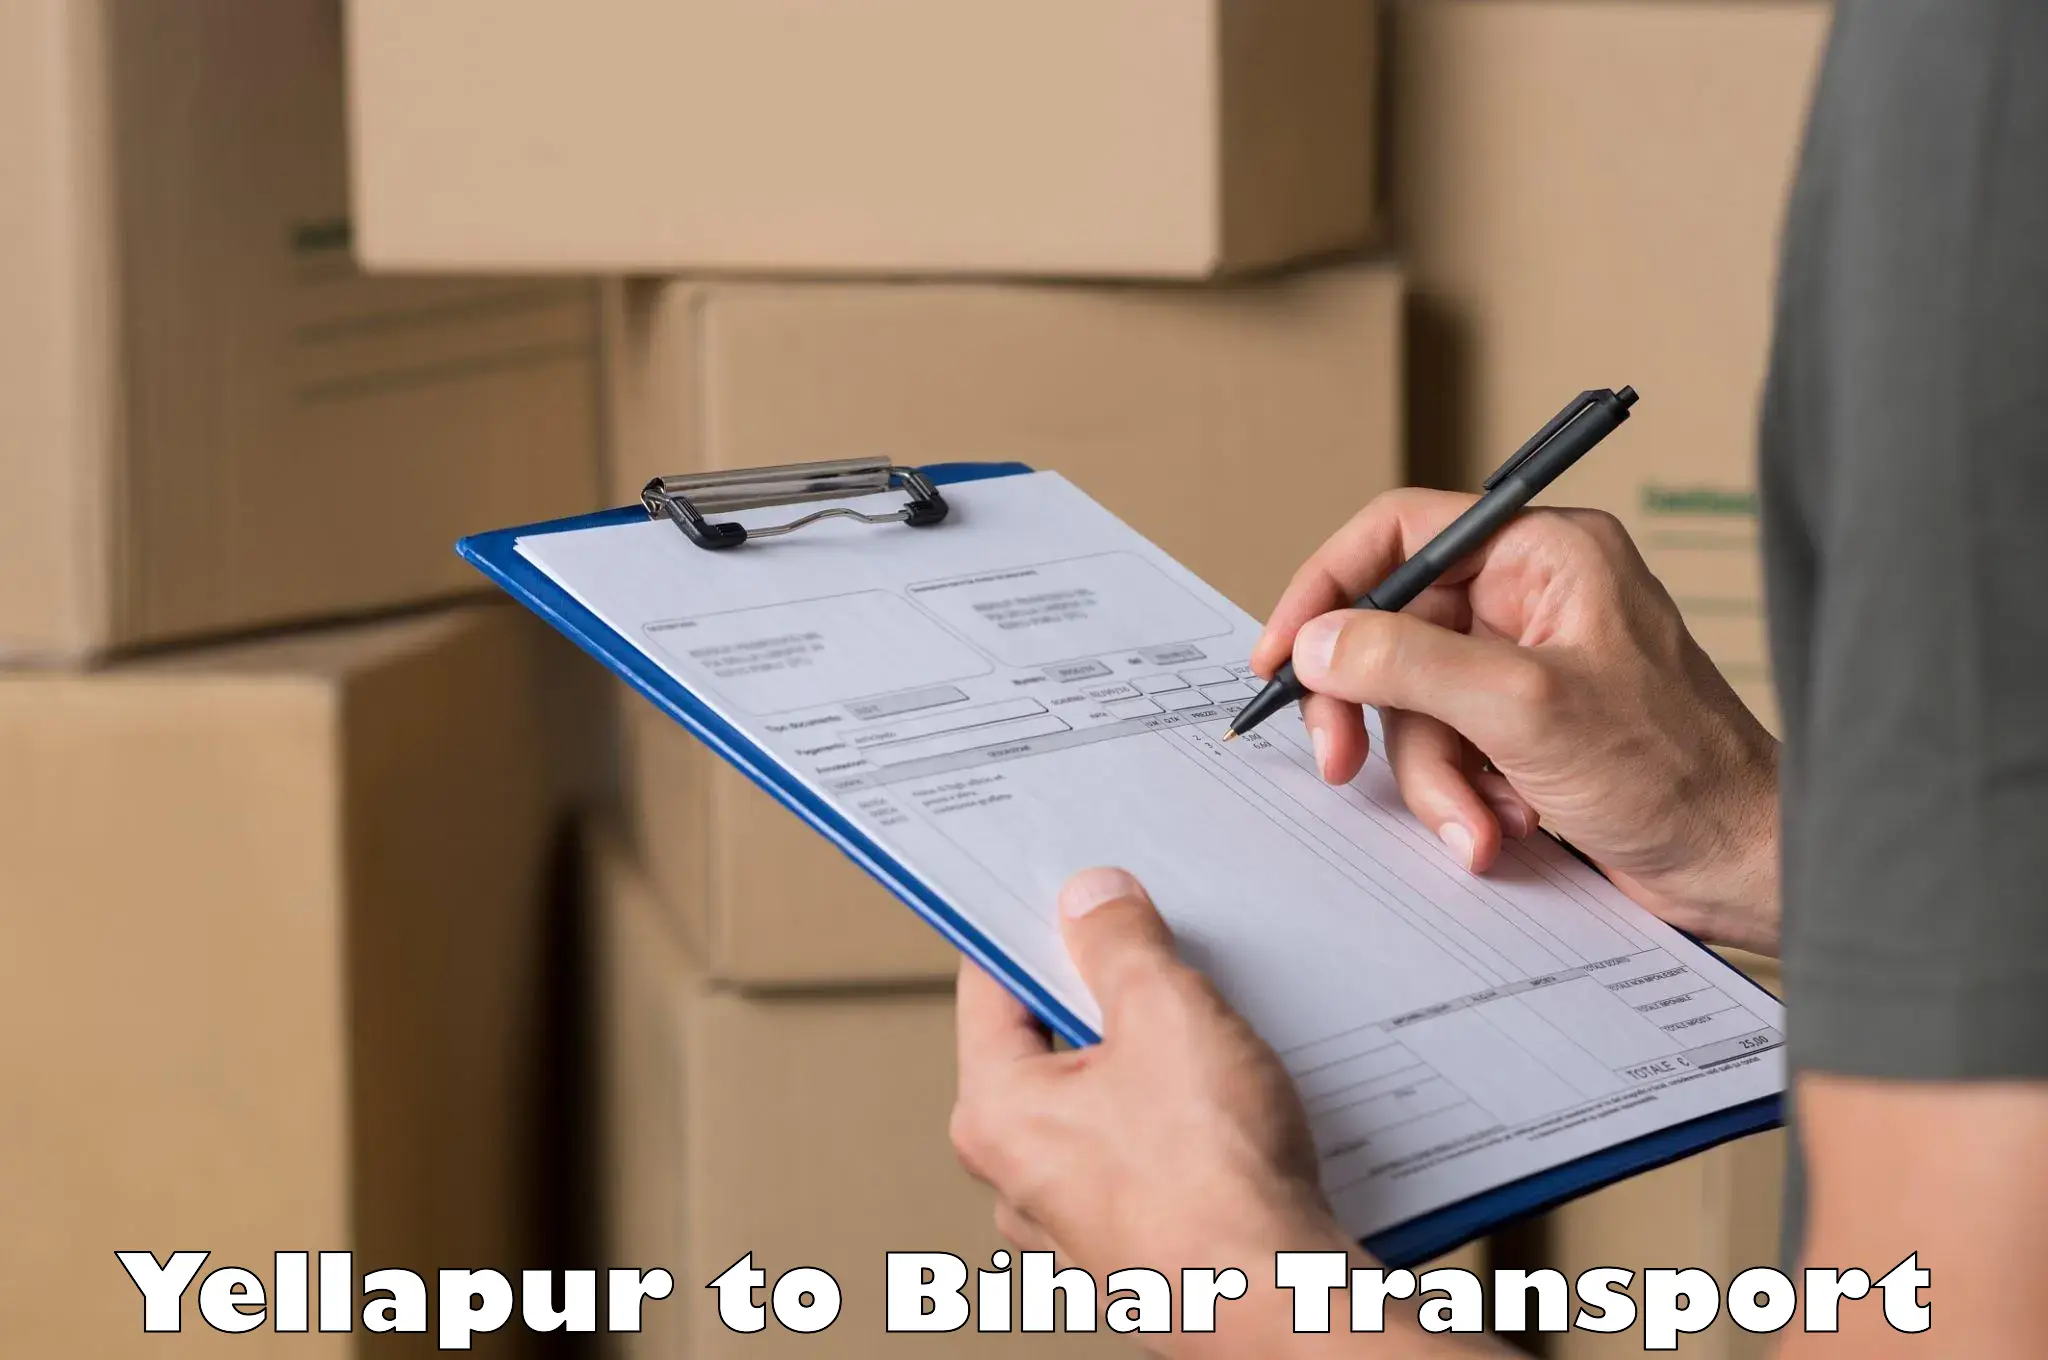 Pick up transport service Yellapur to Dighwara